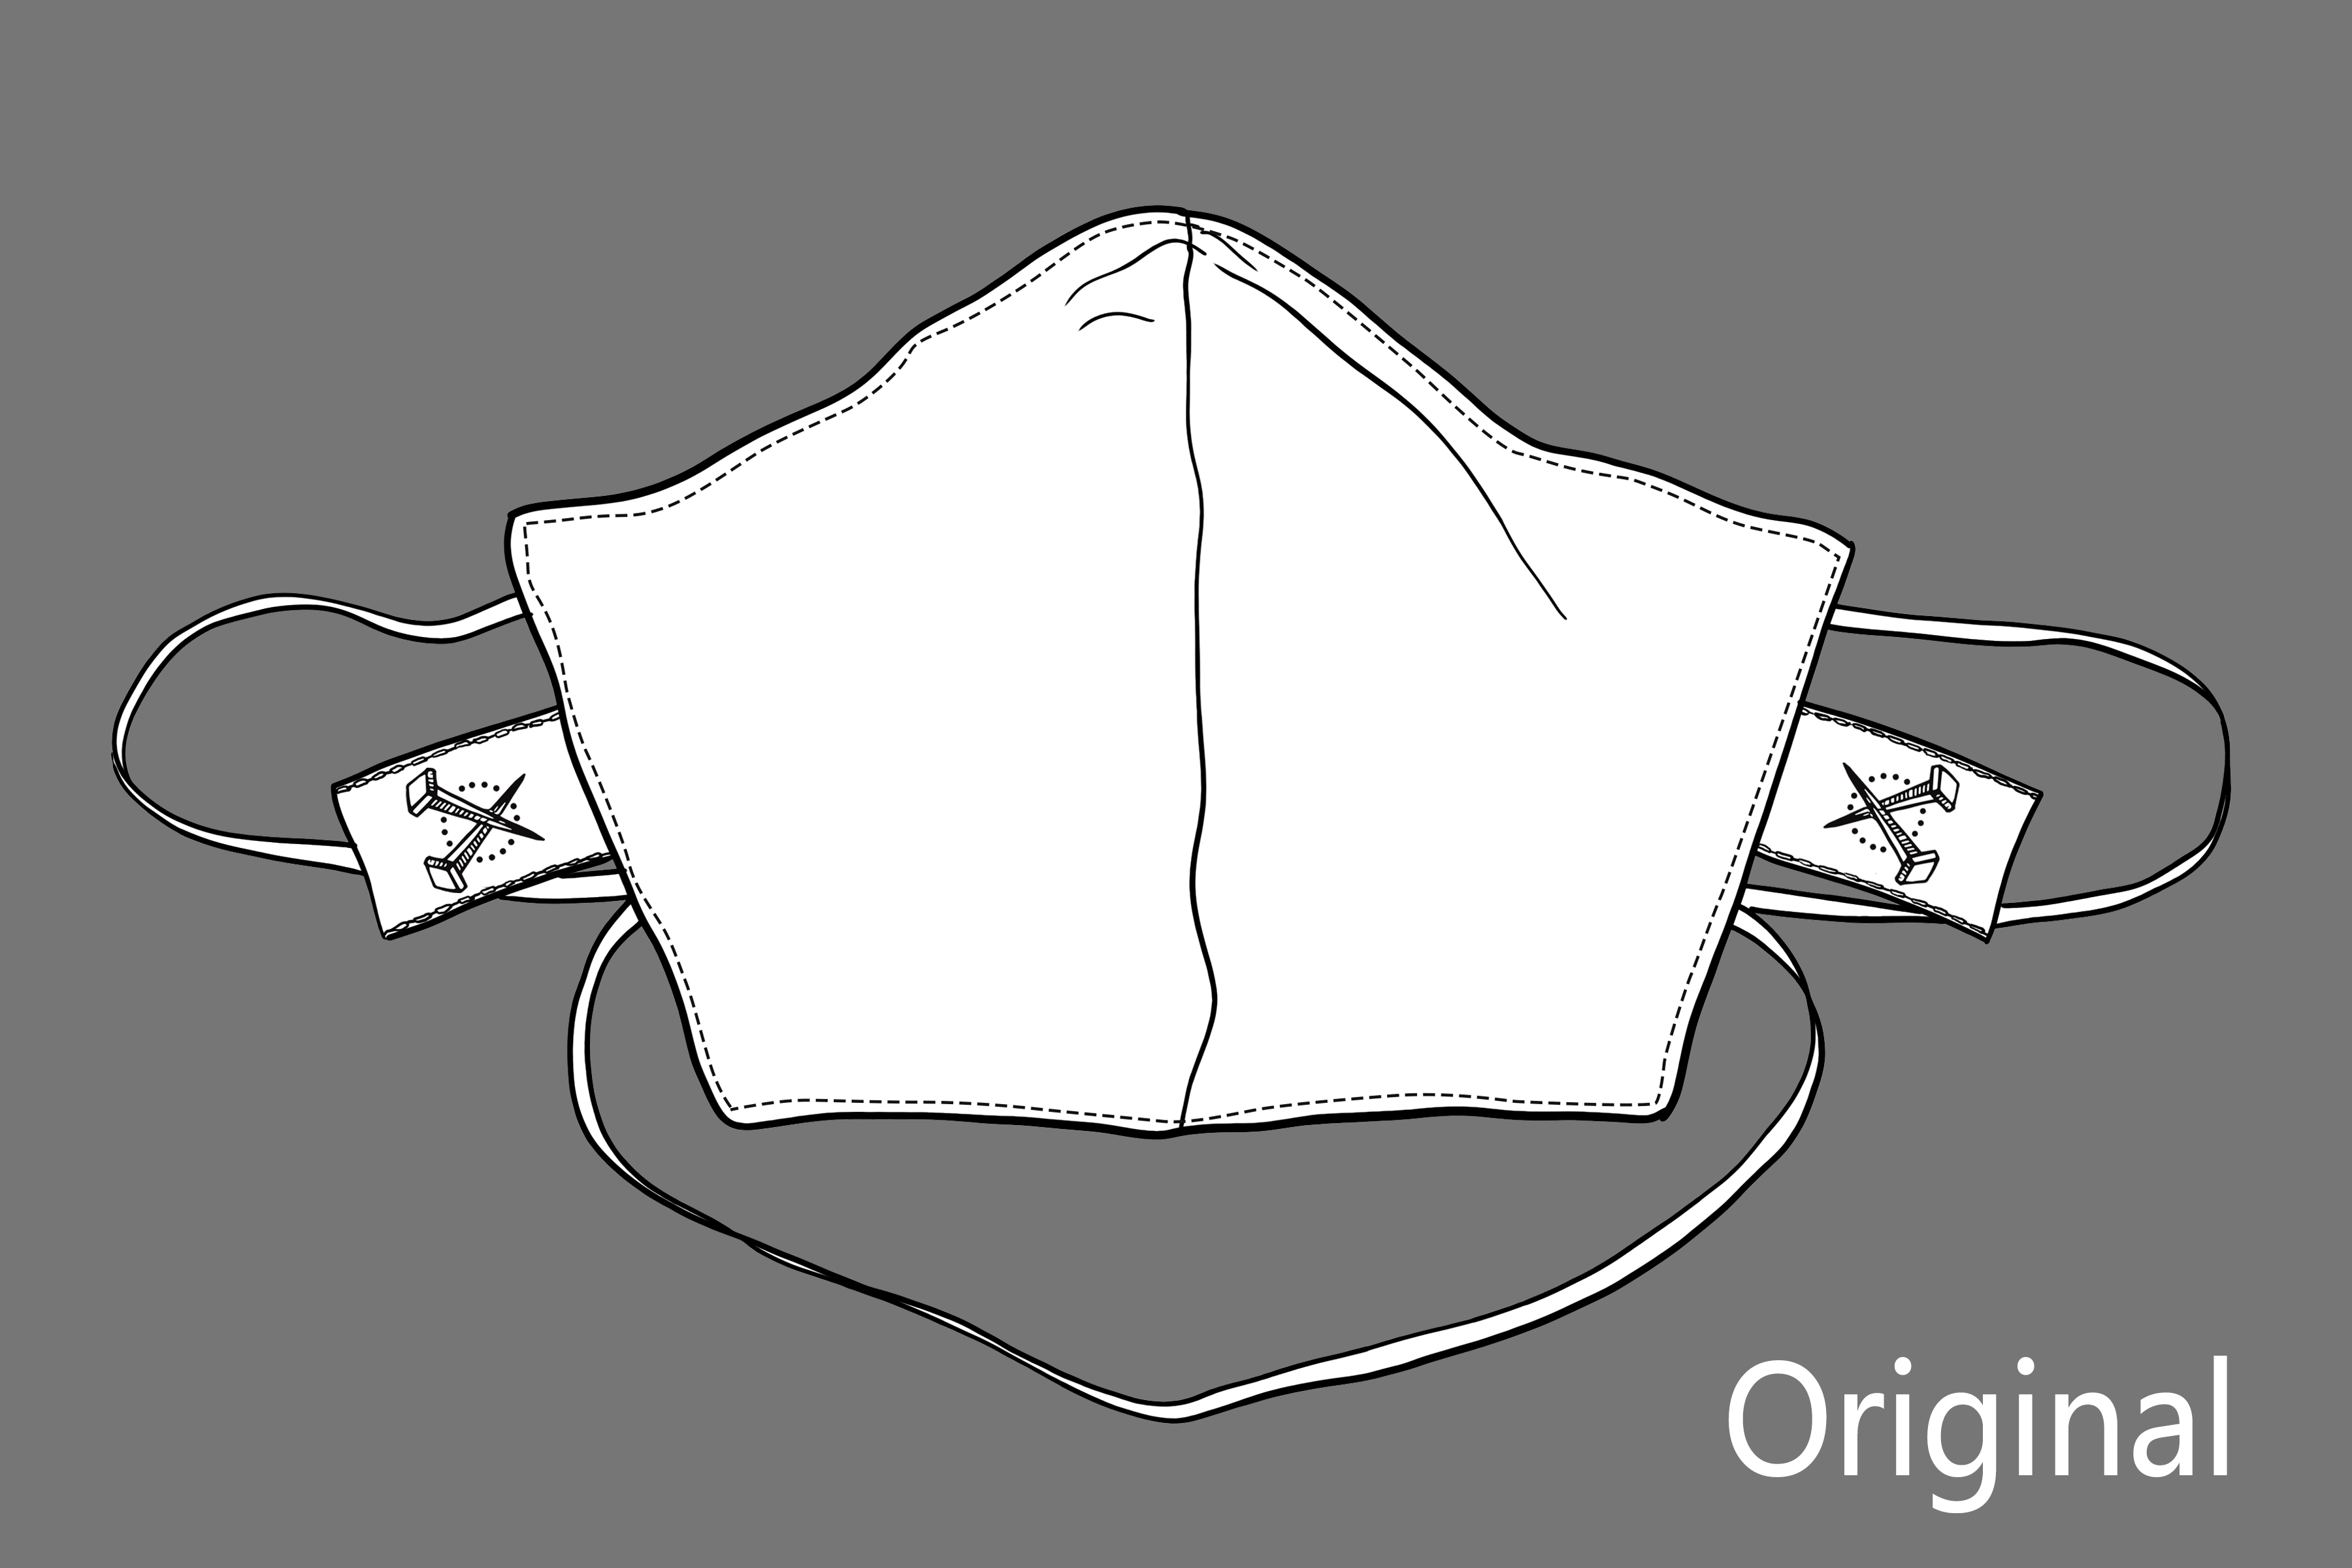 OG BLACK - ORIGINAL 3 Layer Cotton Mask w/ Filter